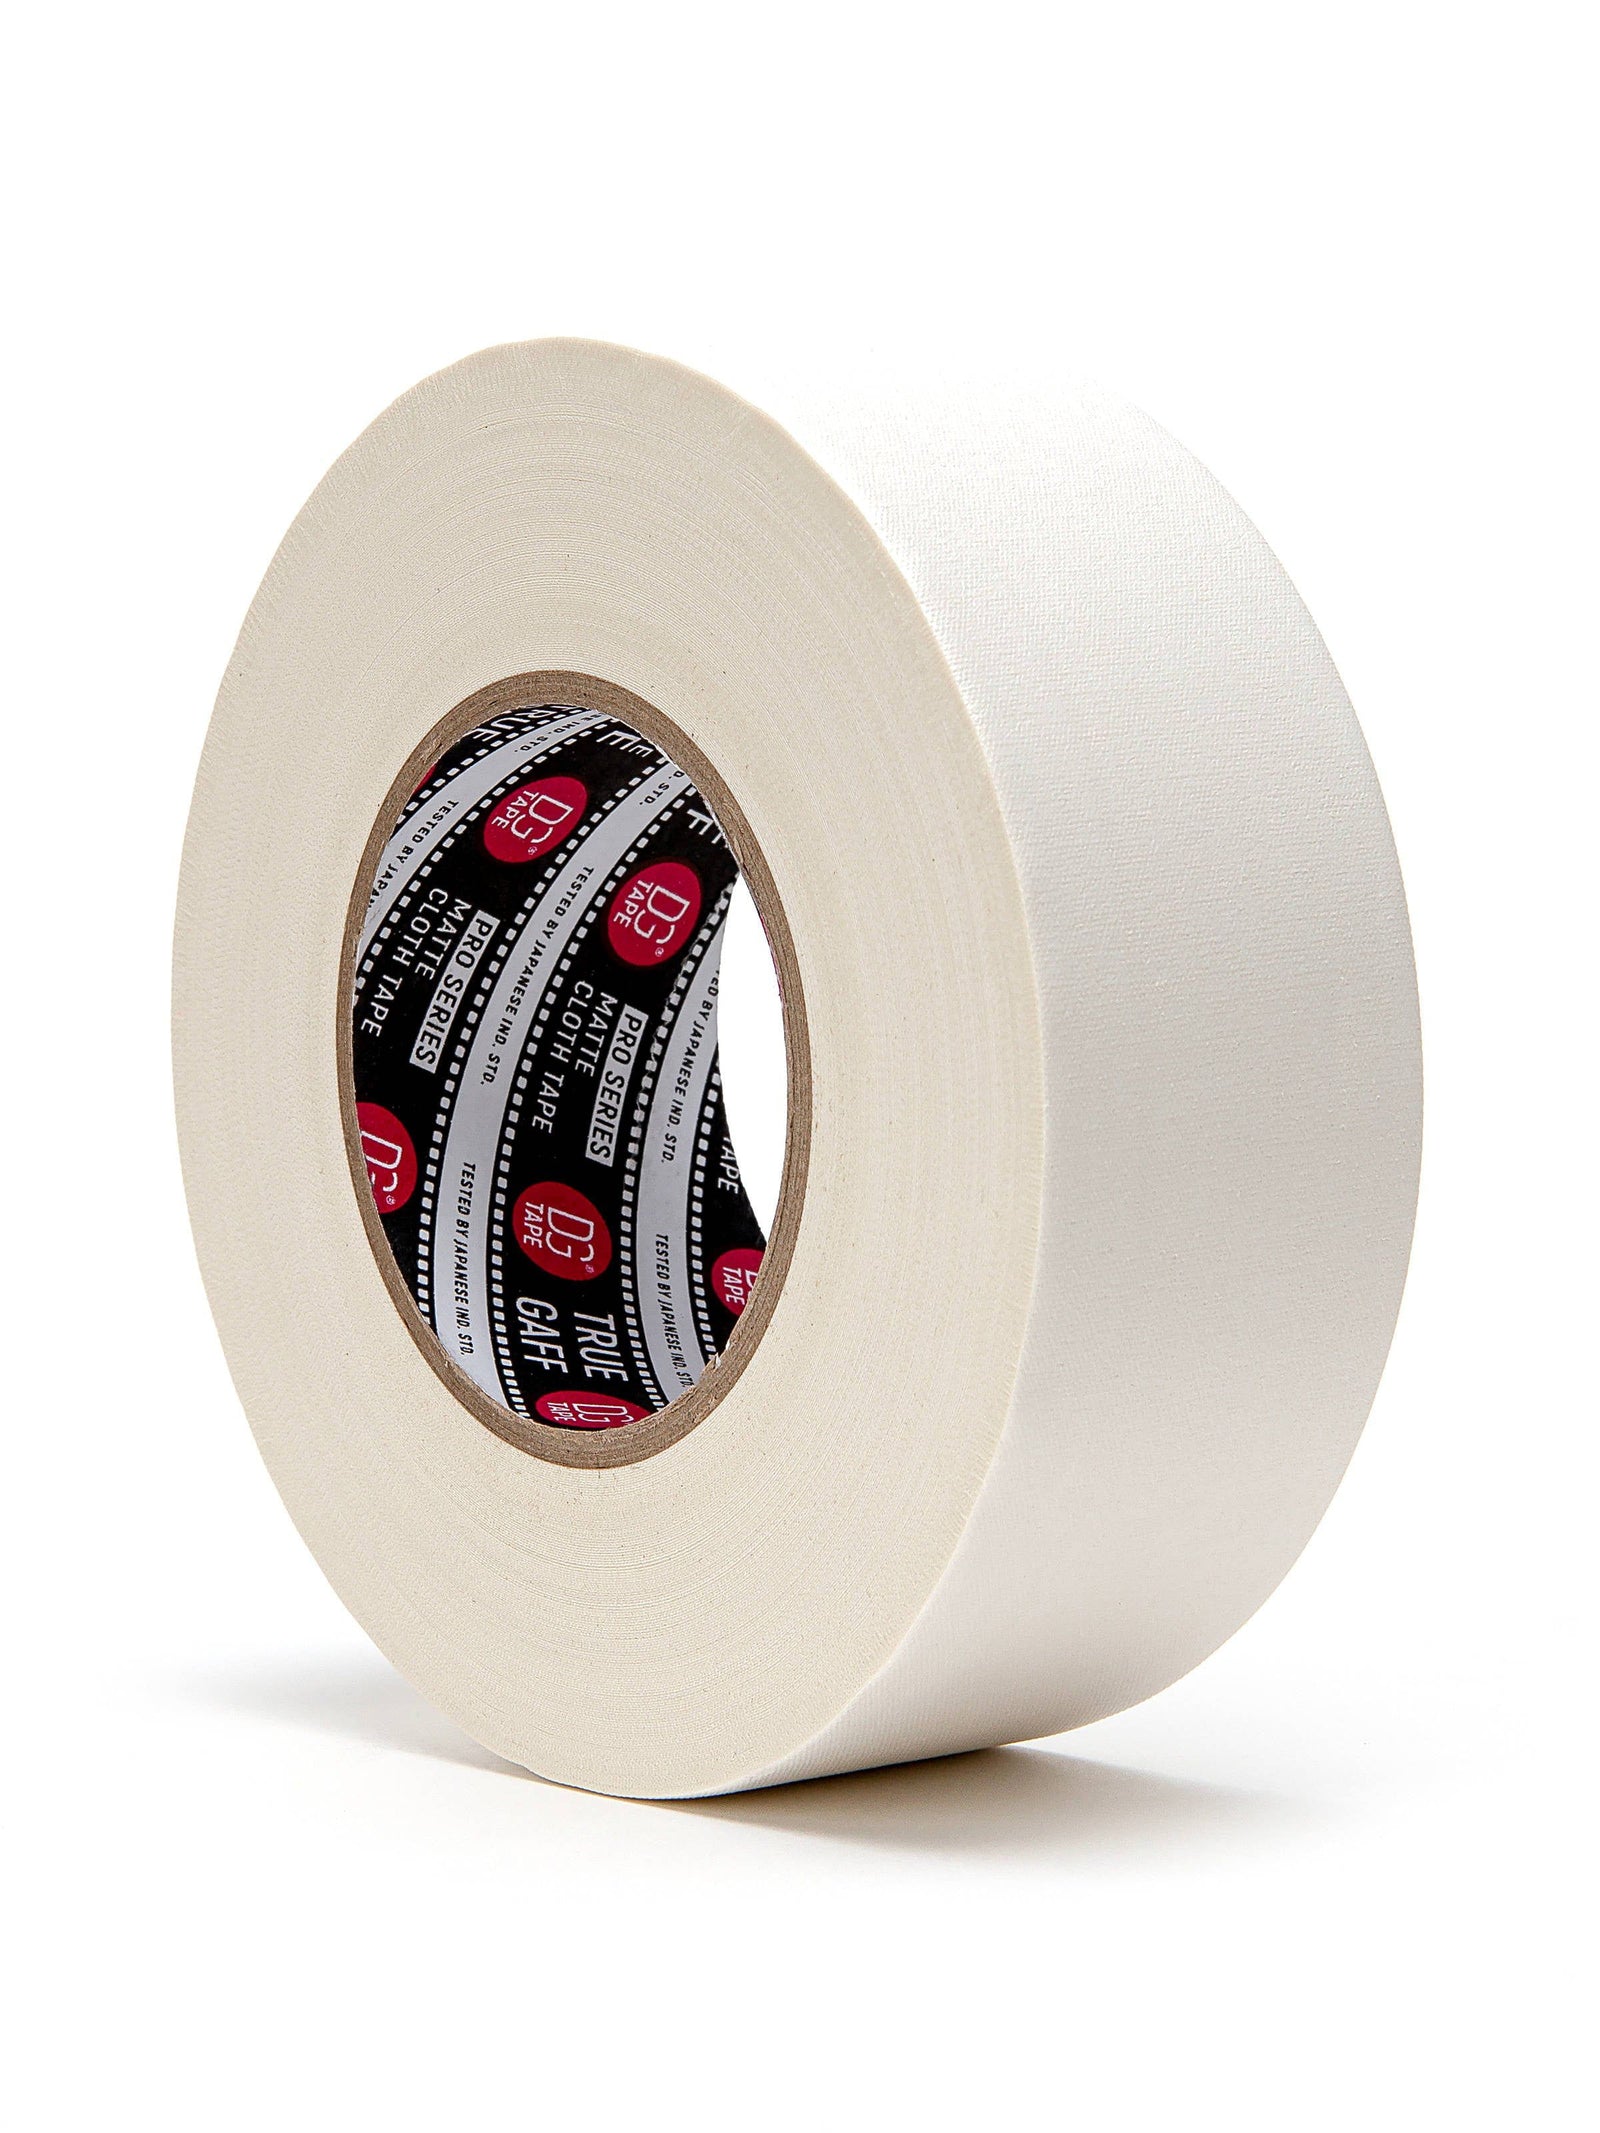 SAMPLE - 120MESH - 2inX60 WHITE gaffer tape